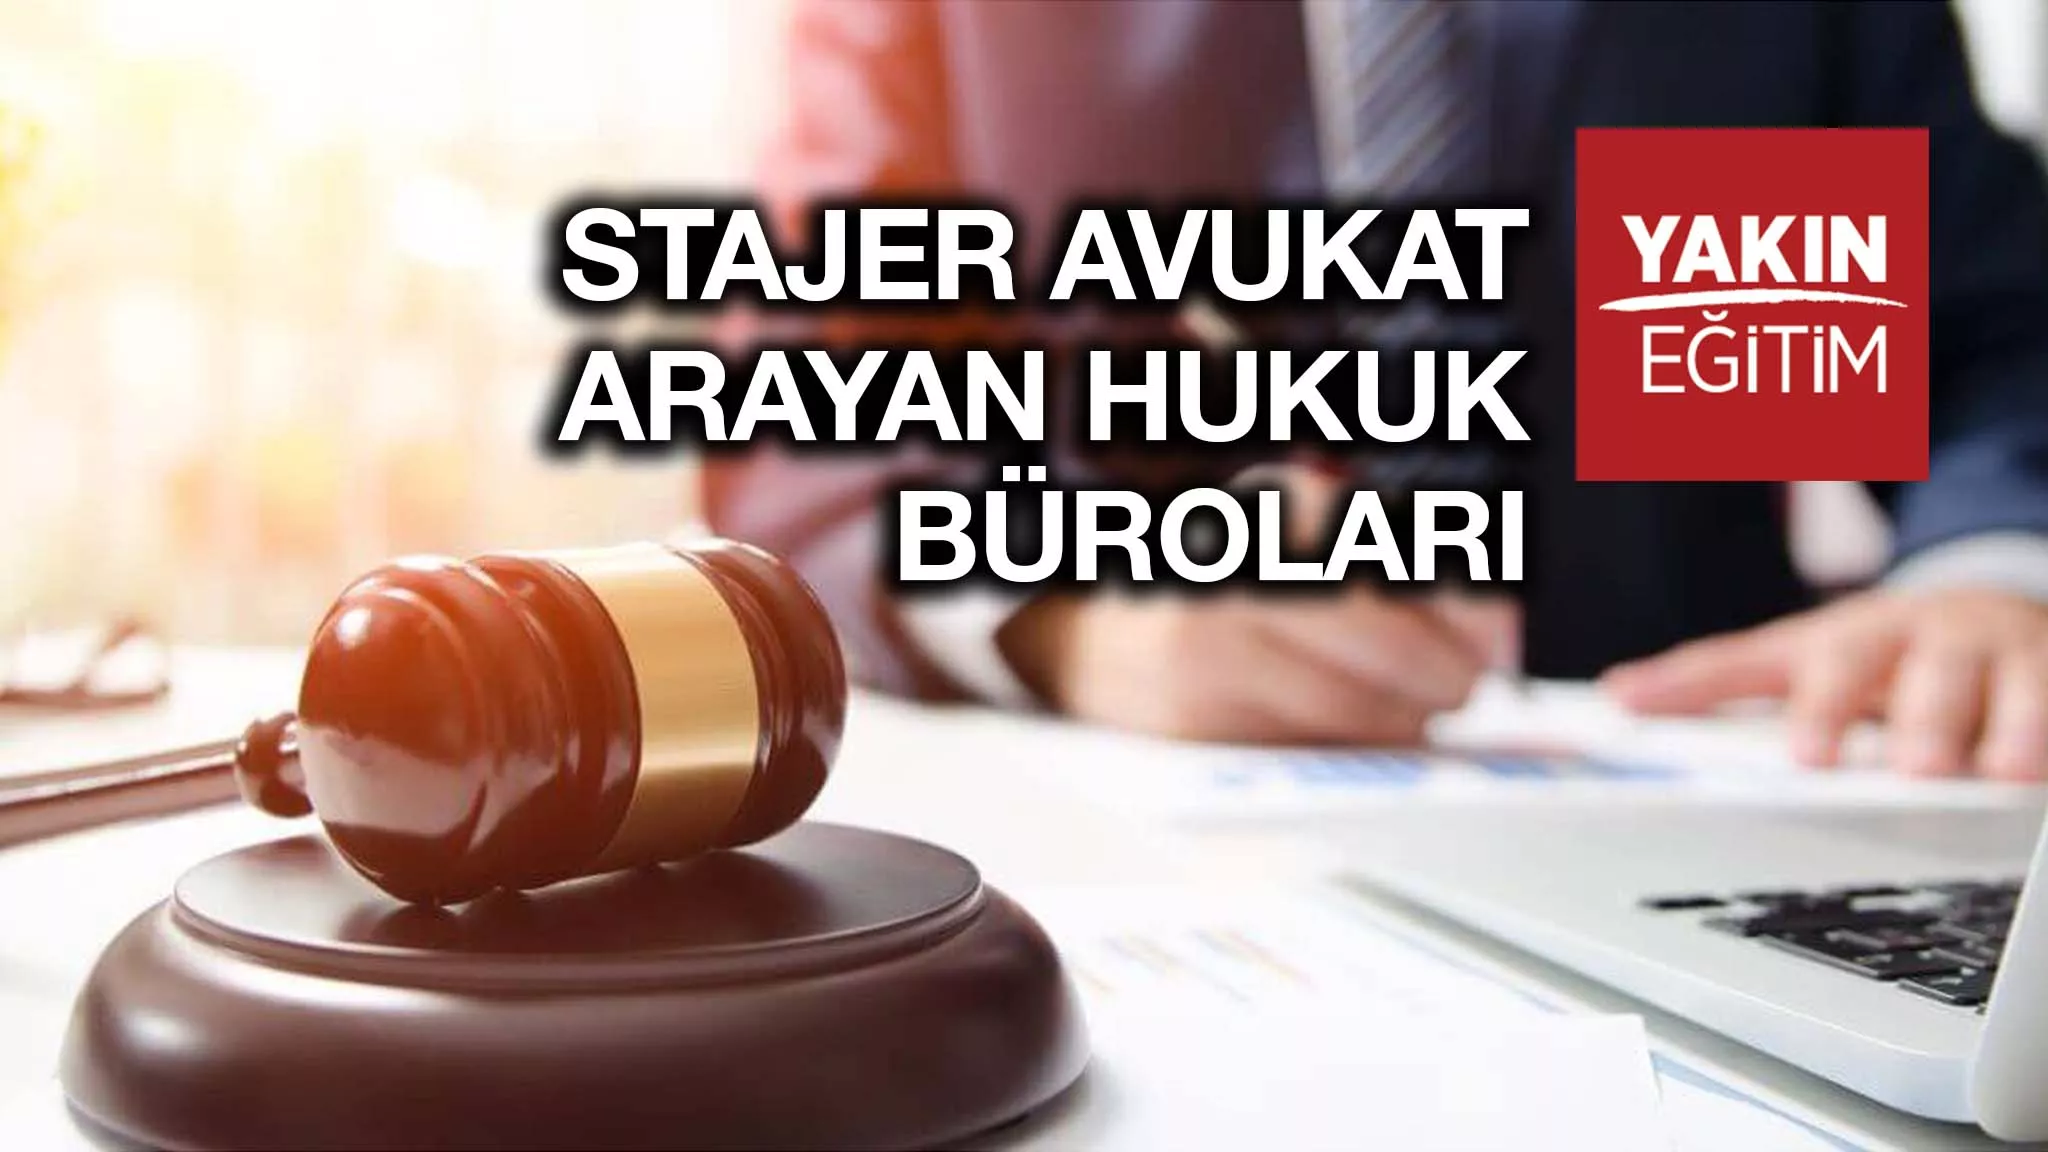 Stajyer Avukat İş İlanları - Stajyer Avukat Arayan Hukuk Büroları.jpg